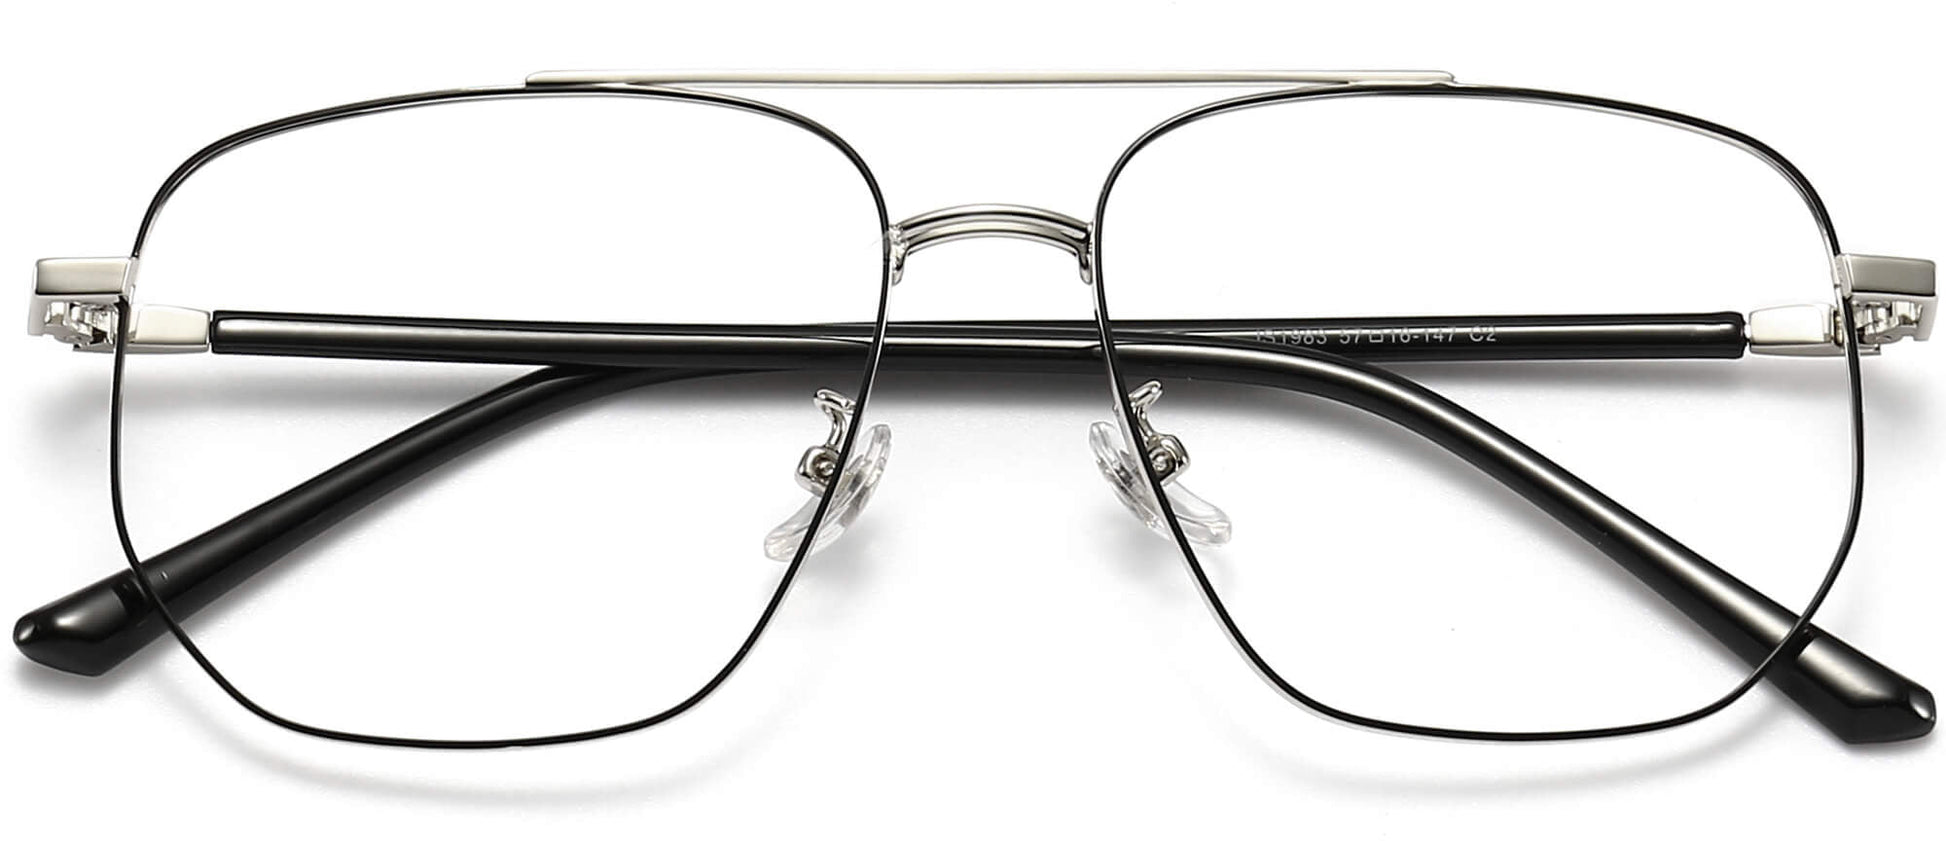 Nikolas Geometric Black Eyeglasses from ANRRI, closed view